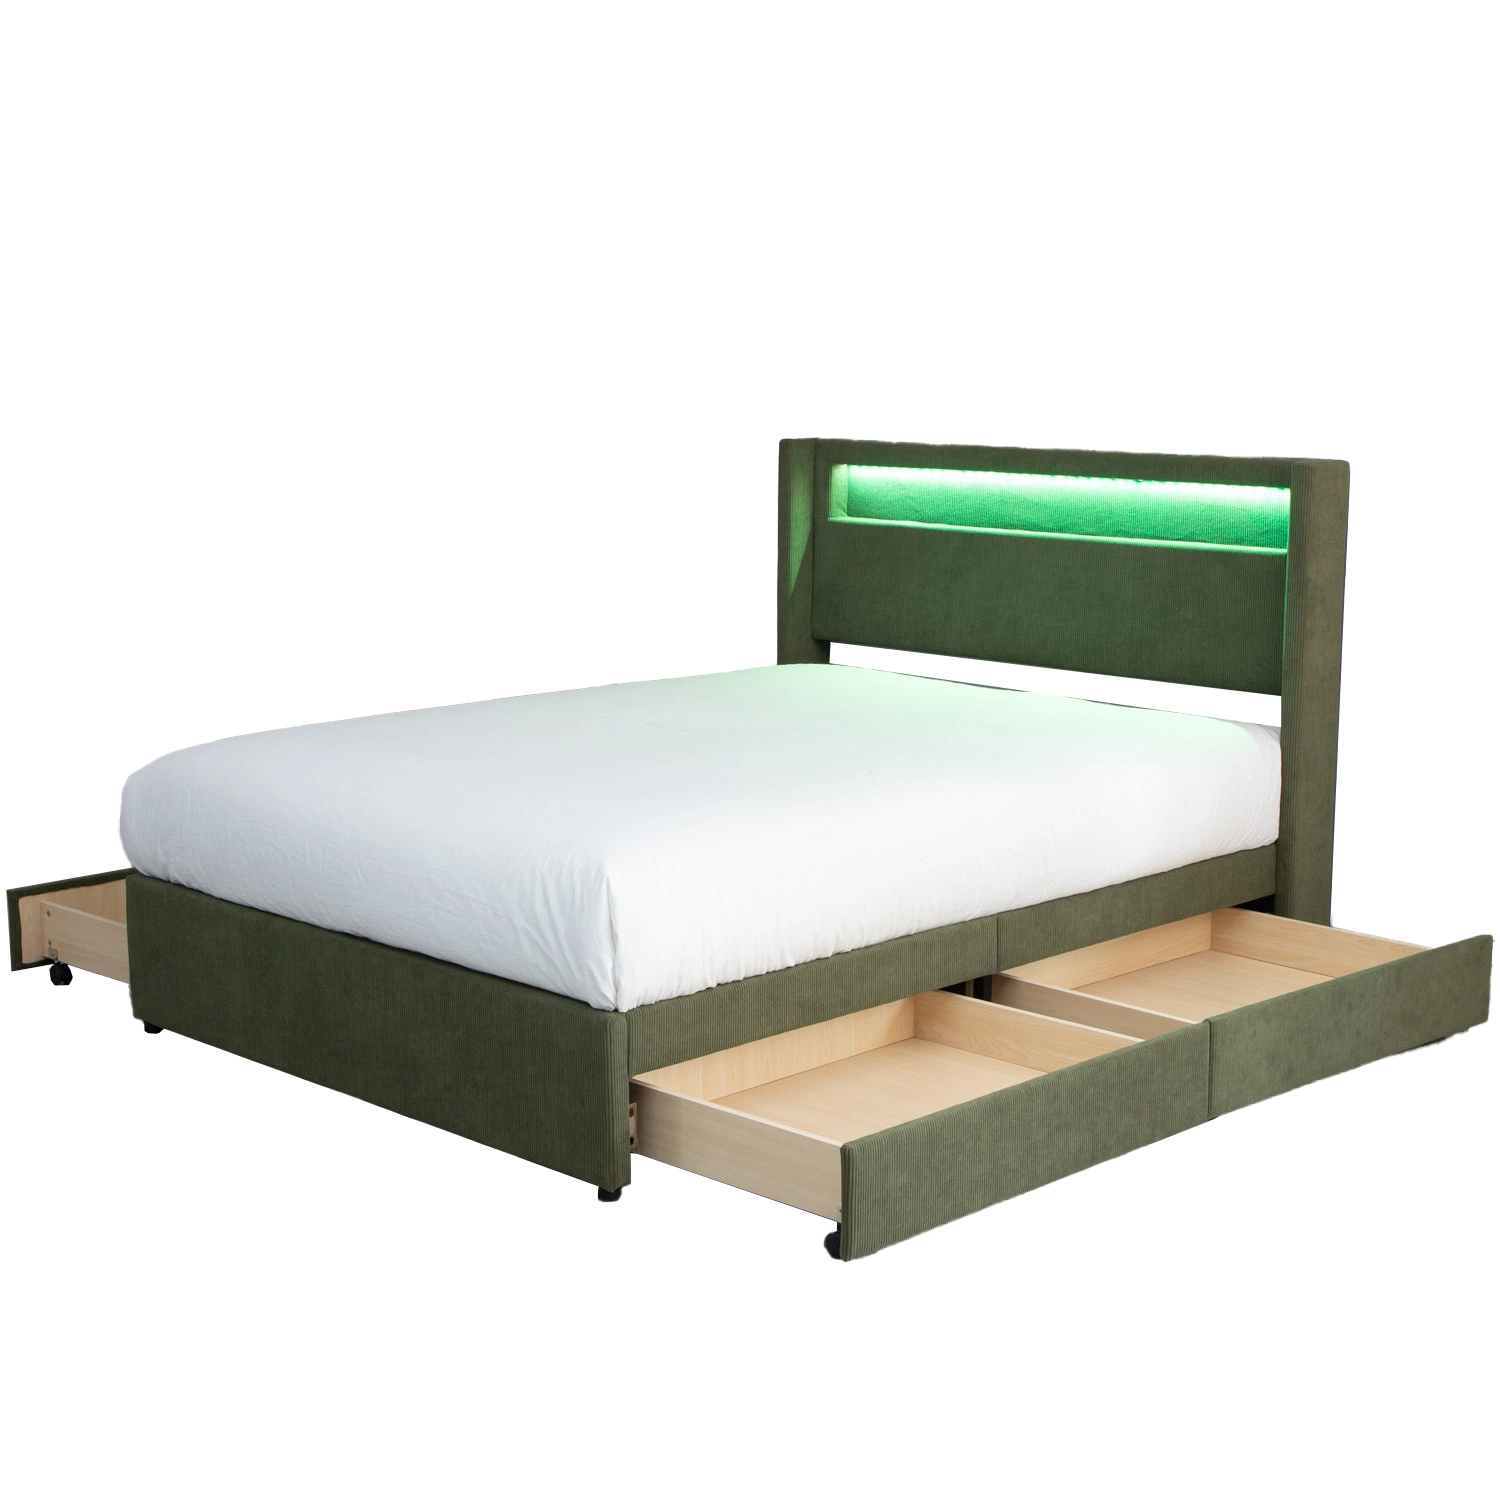 Huayang Home Мебель хранение кровати LED королева кровати с выдвижными ящиками Спальня спальня спальня спальня мебель SGS заводской сертификации